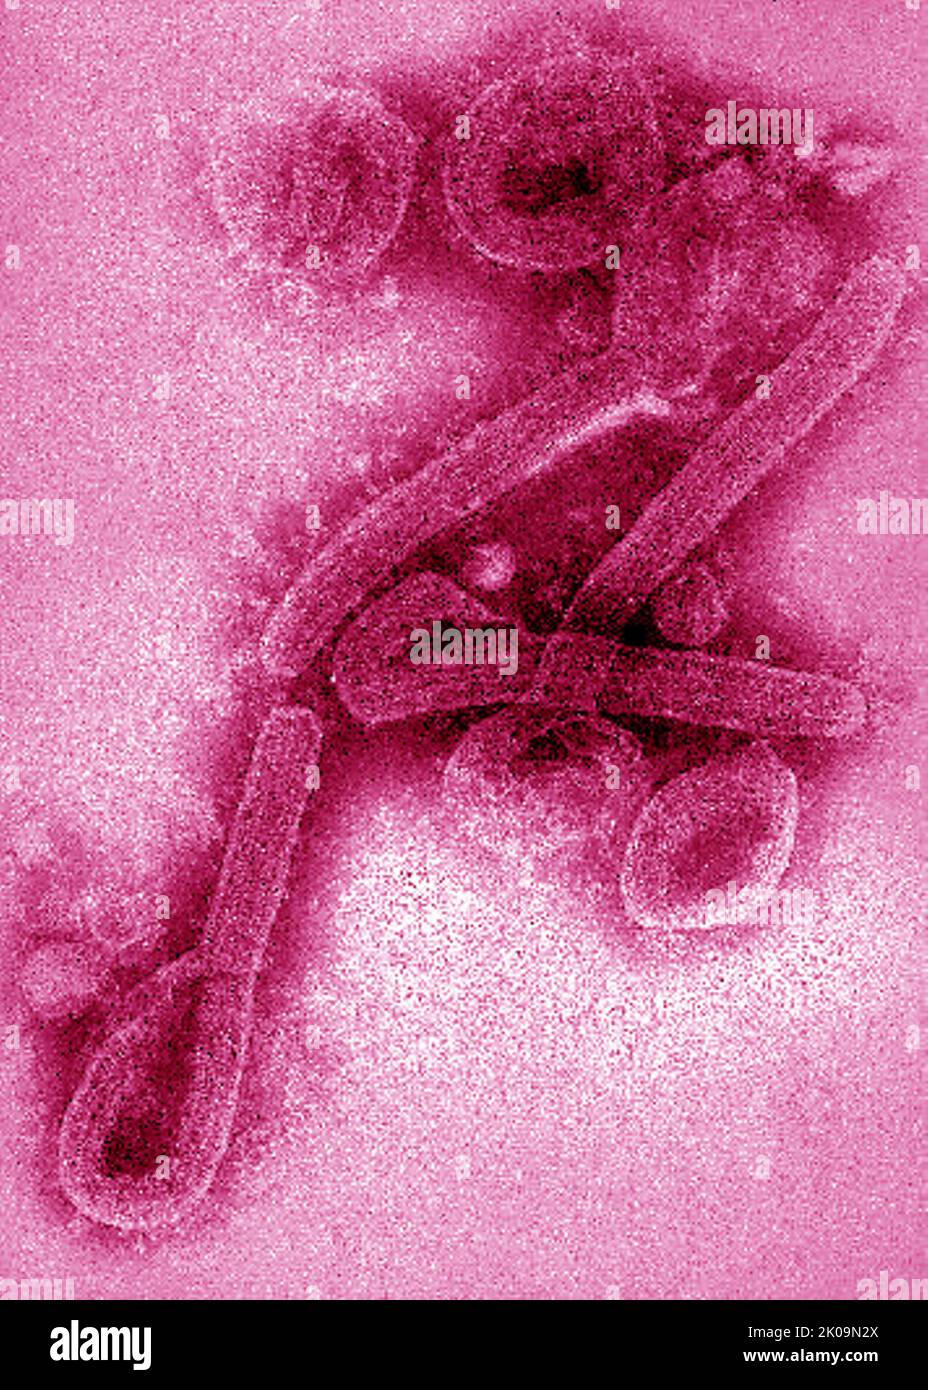 Immagine al microscopio elettronico a trasmissione (TEM) di virioni del virus Marburg. Foto Stock